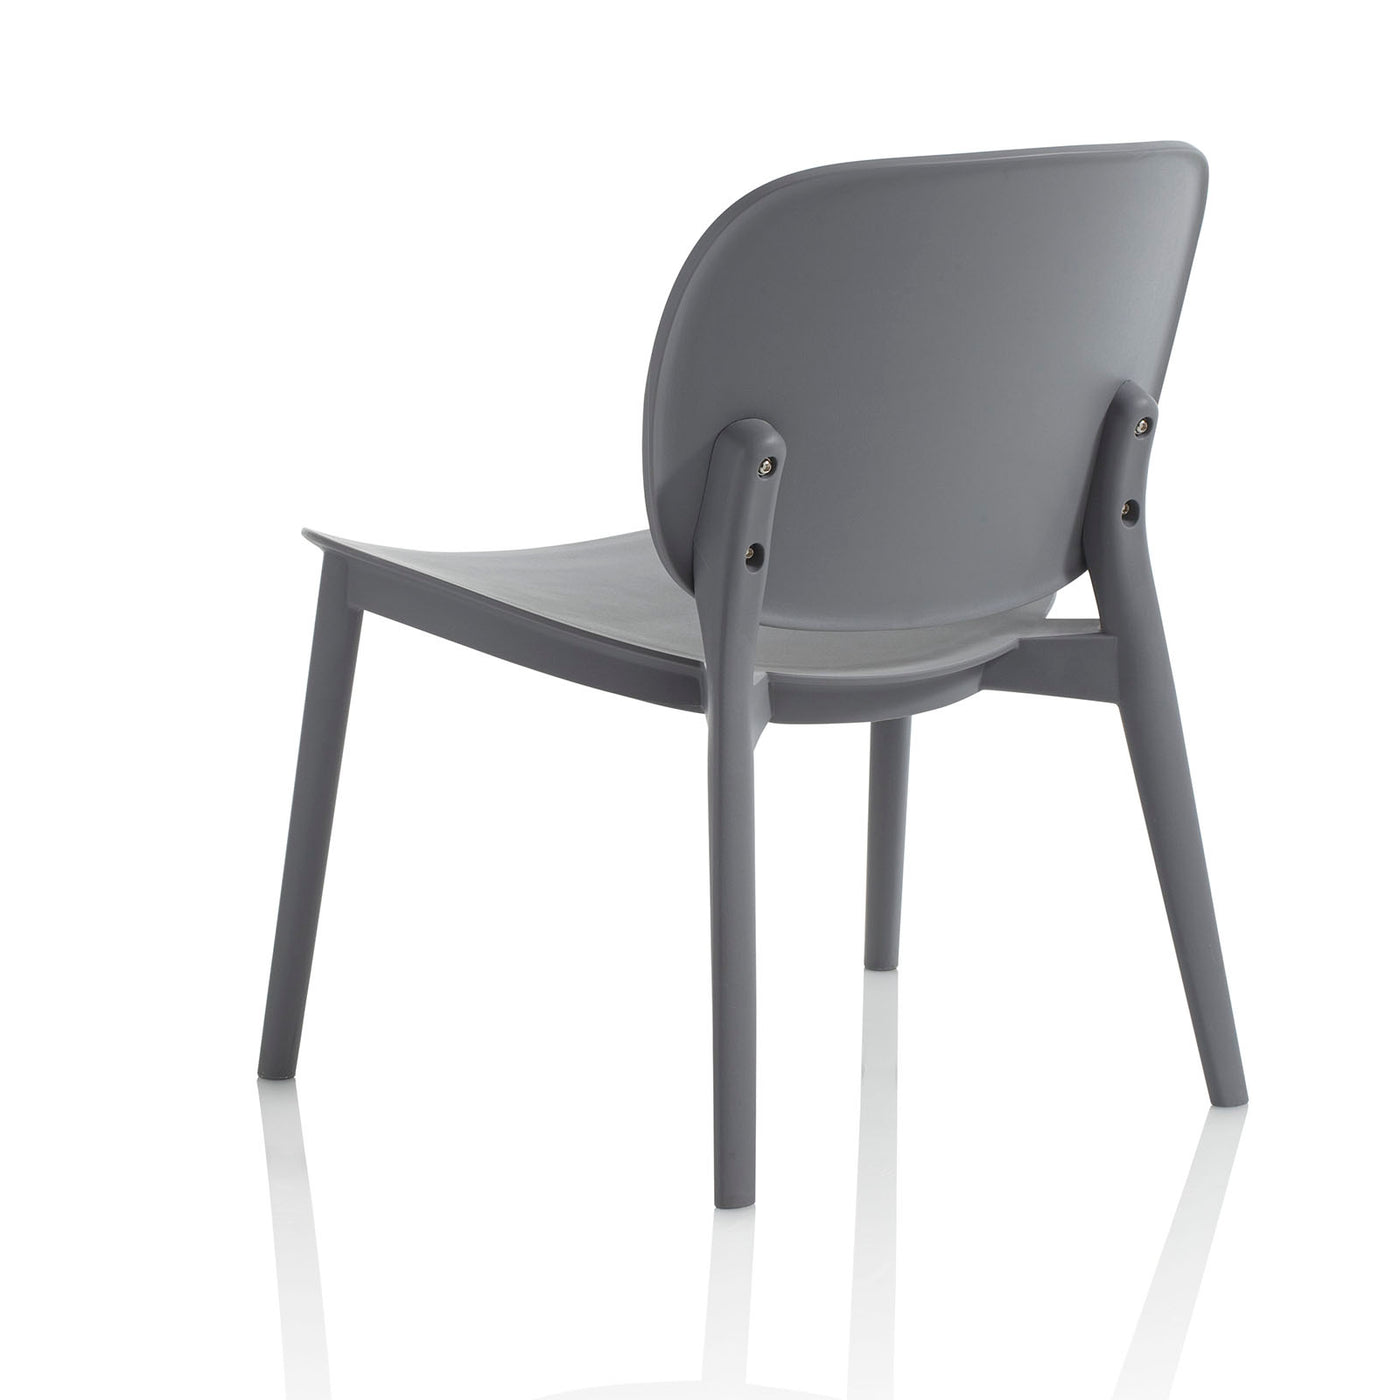 Set of 2 MAHON gray indoor/outdoor chairs